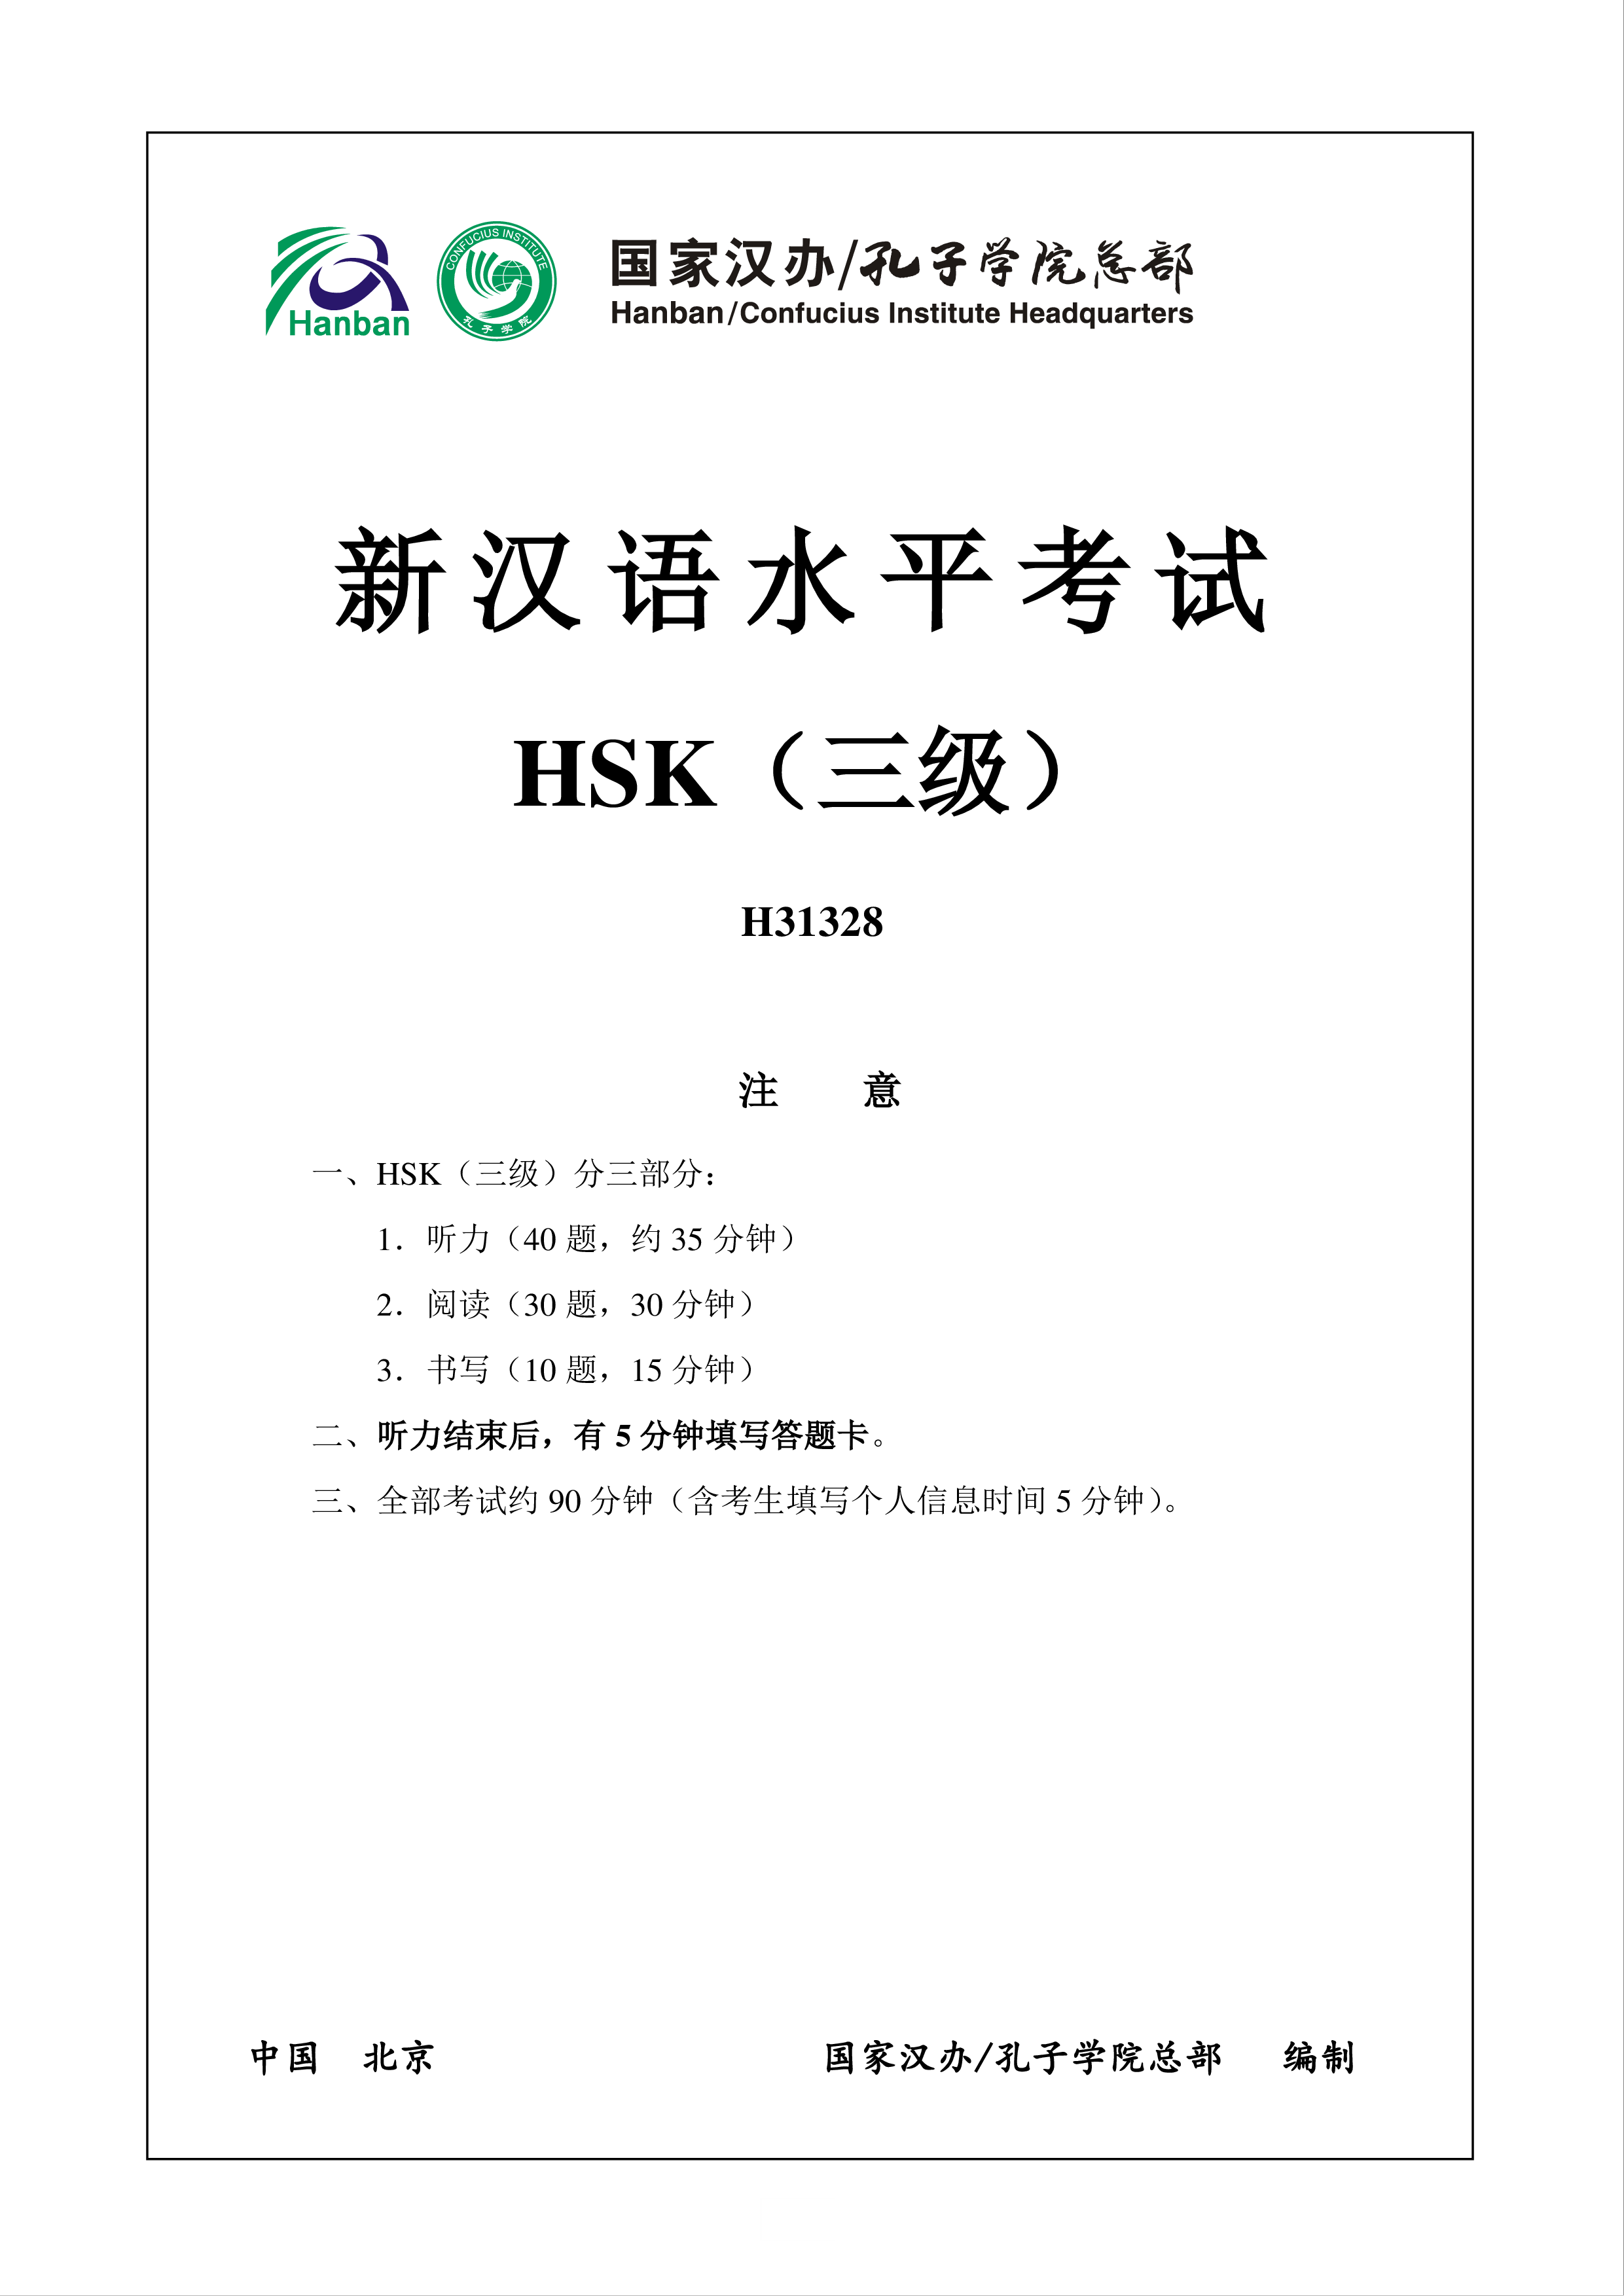 新汉语水平hsk三级考试h31328模拟真题考试音频和答案 plantilla imagen principal